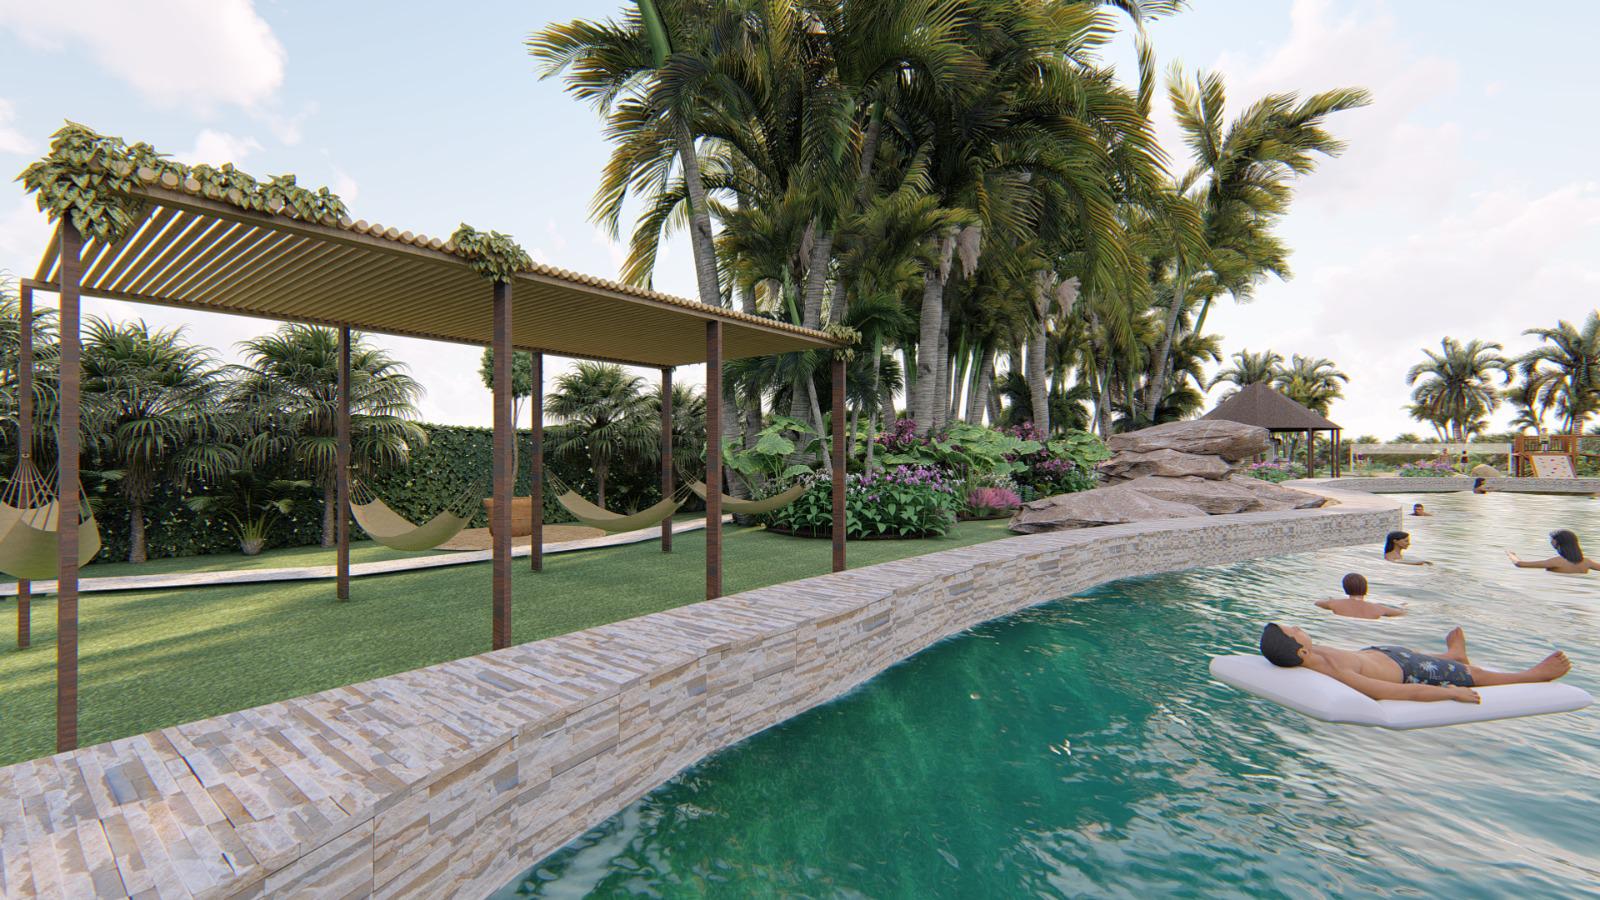 otros inmuebles - Vive Sostenible en Veron, Punta Cana: Residencia de Villas a Pasos del Mar 5